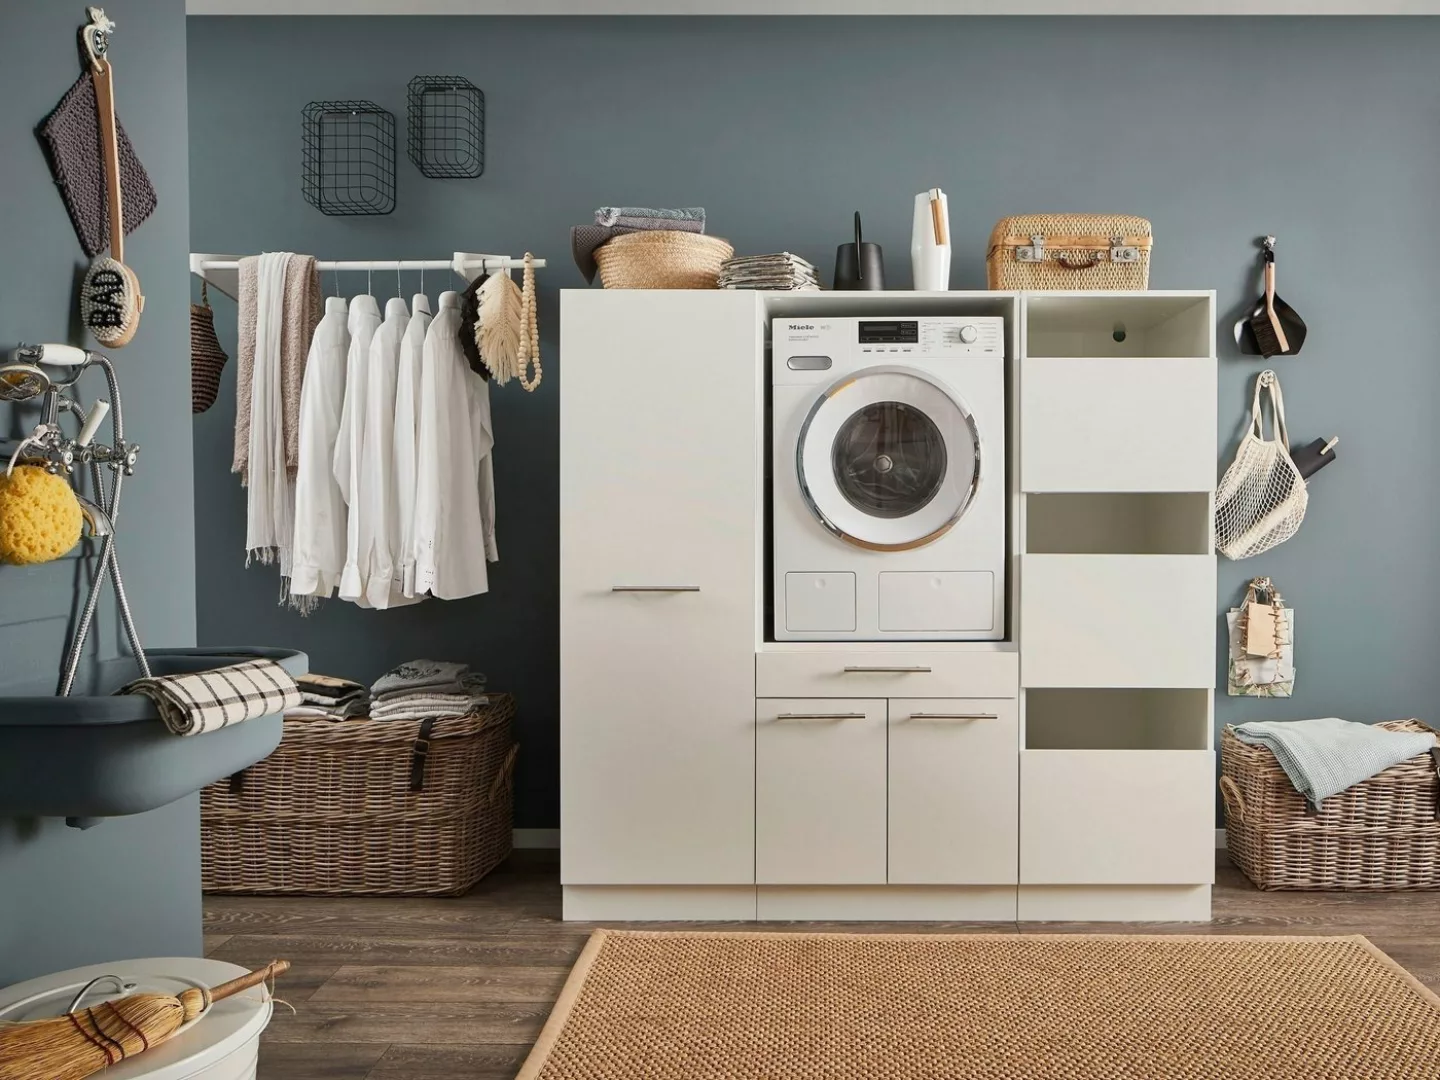 freiraum Waschmaschinenumbauschrank LAUNDREEZY in weiß - 167,5x162x67,5 (Bx günstig online kaufen